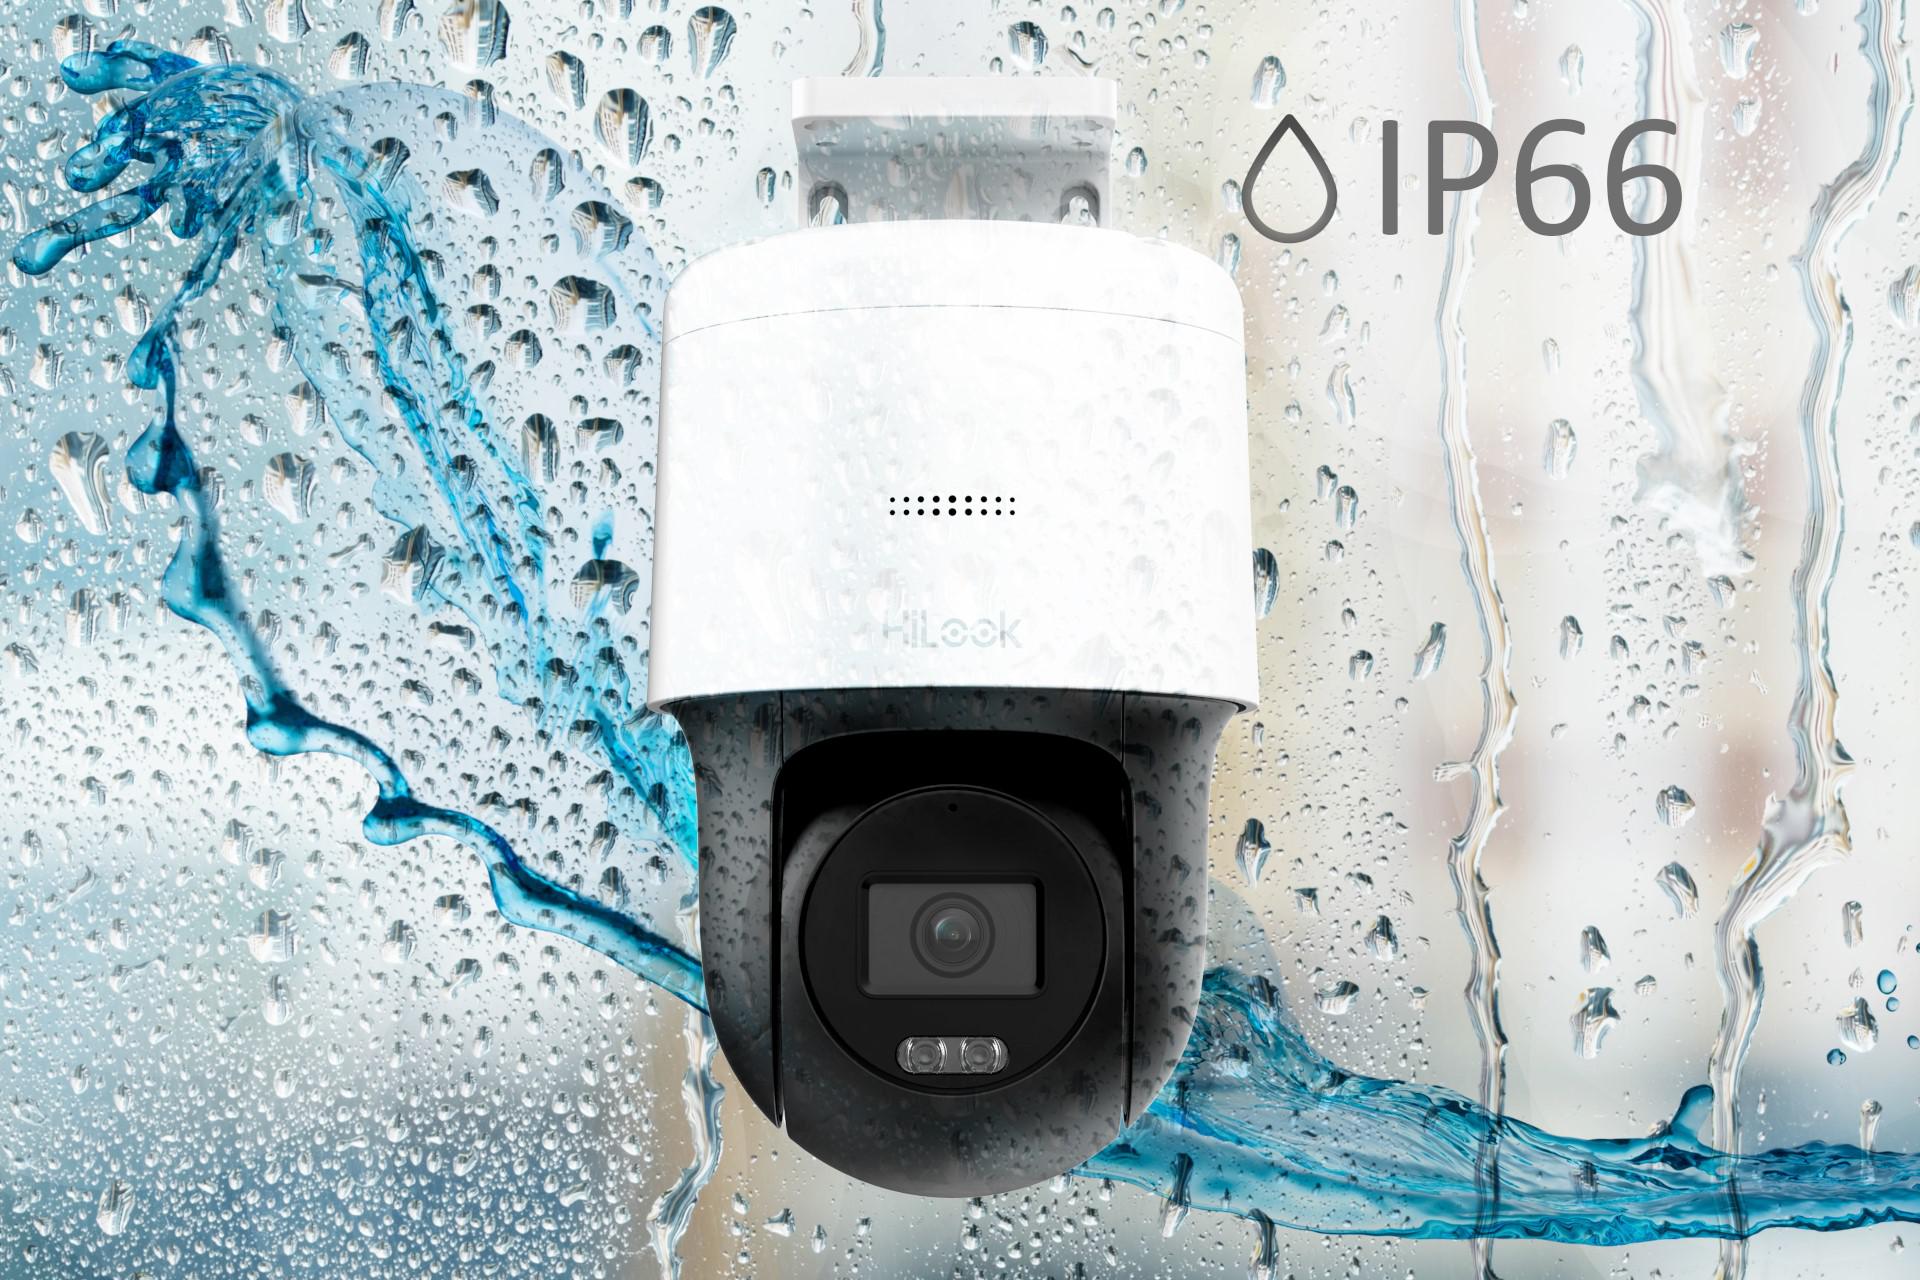 Kamera IP Hilook turret 2MP IPCAM-T2 2.8mm - odporność na wodę i kurz (IP66)